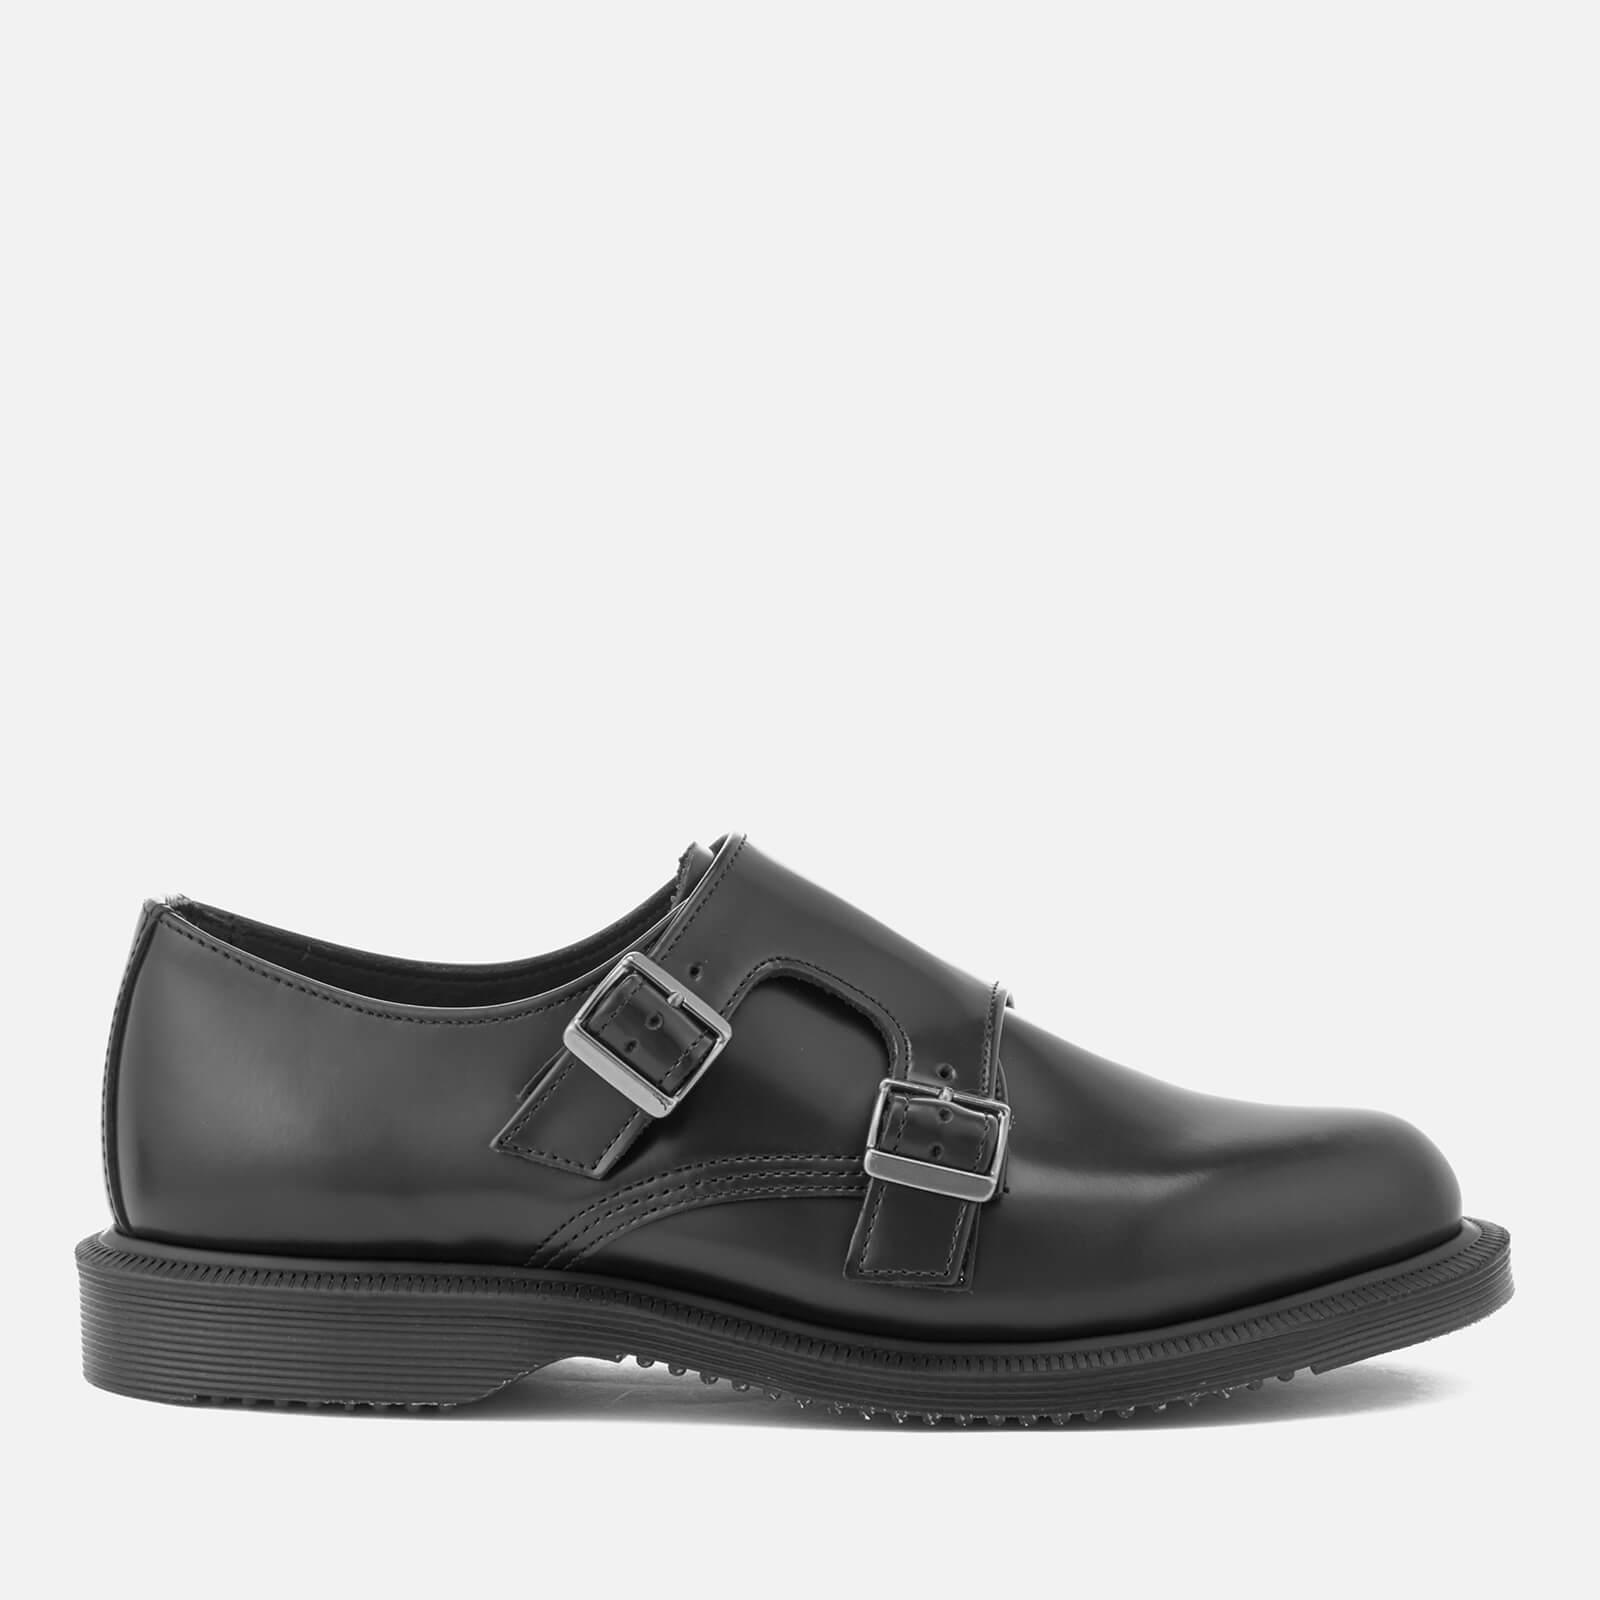 Dr. Martens Women's Kensington Pandora Leather Double Monk Strap Shoes ...